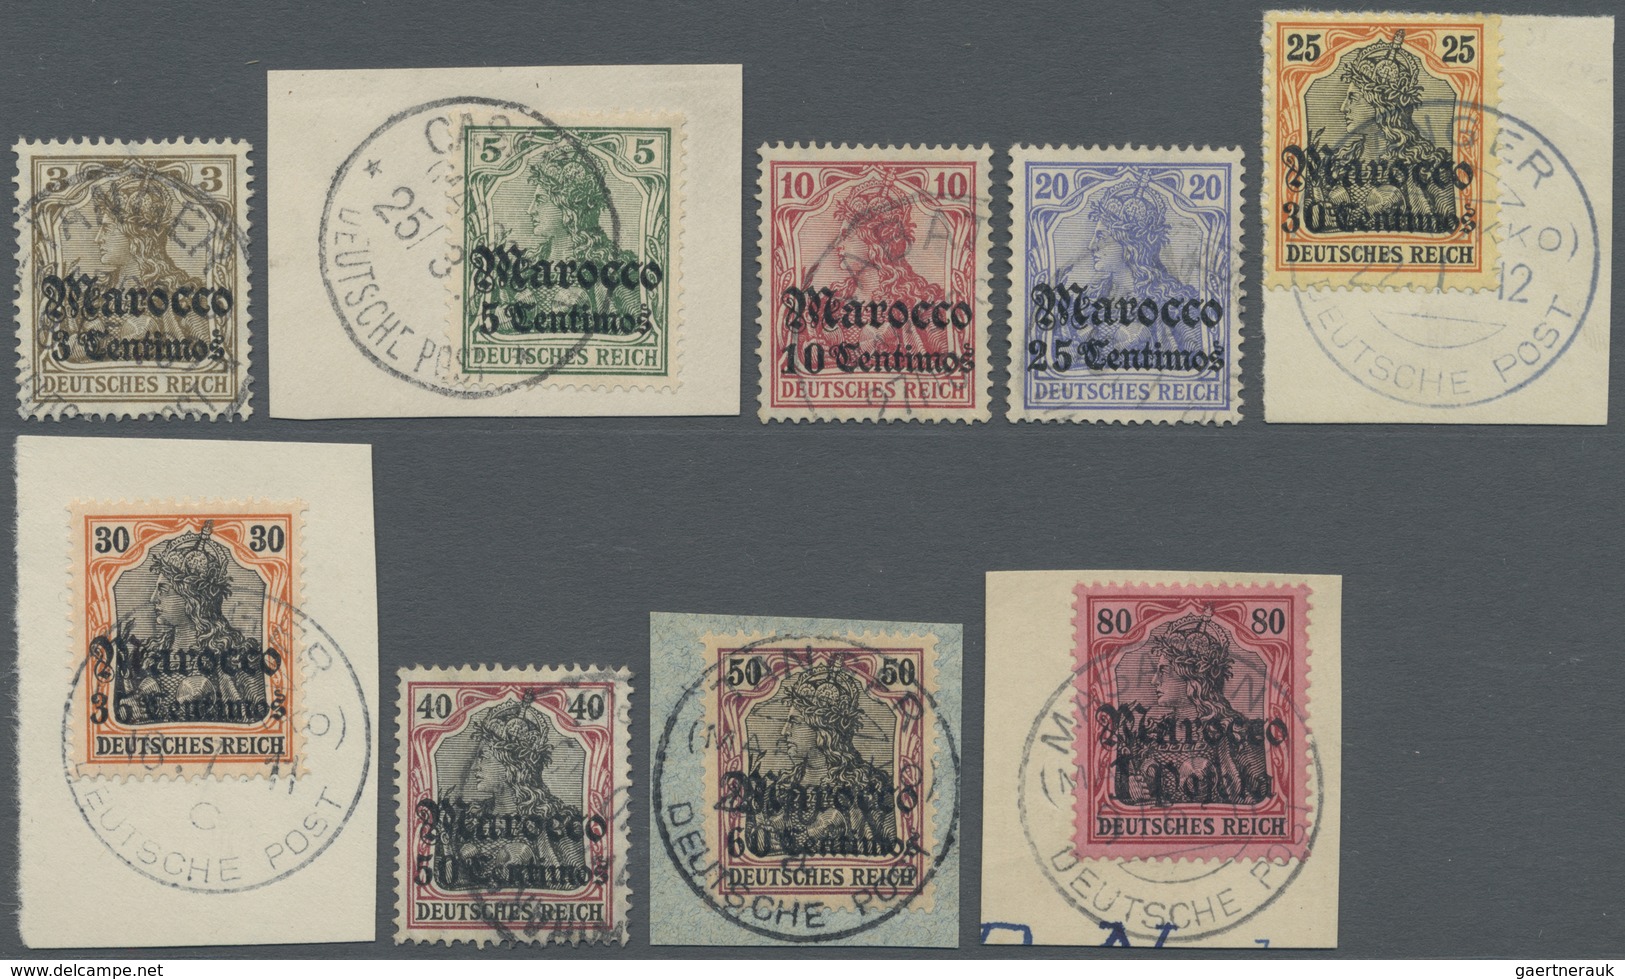 O/Brfst Deutsche Post In Marokko: 1906, Freimarken Germania Mit Wasserzeichen Und Überdruck "Marocco" Sauber - Marocco (uffici)